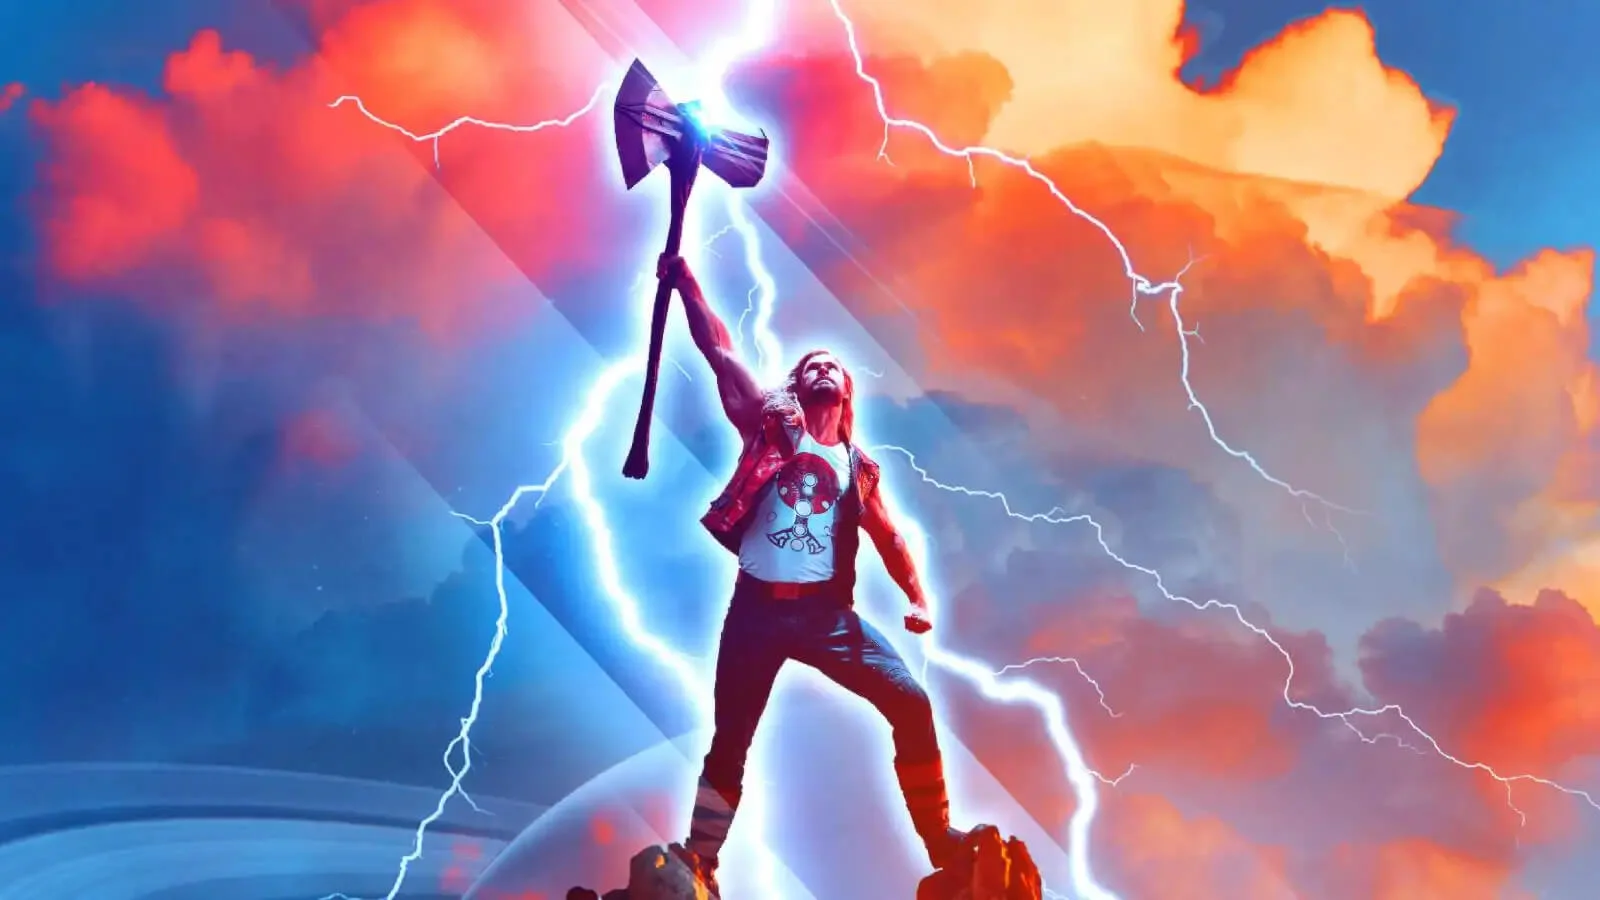 A Thor: Szerelem és mennydörgés törölt jelenetei között találunk egy olyan istent, akit majdnem teljesen kivágtak a filmből